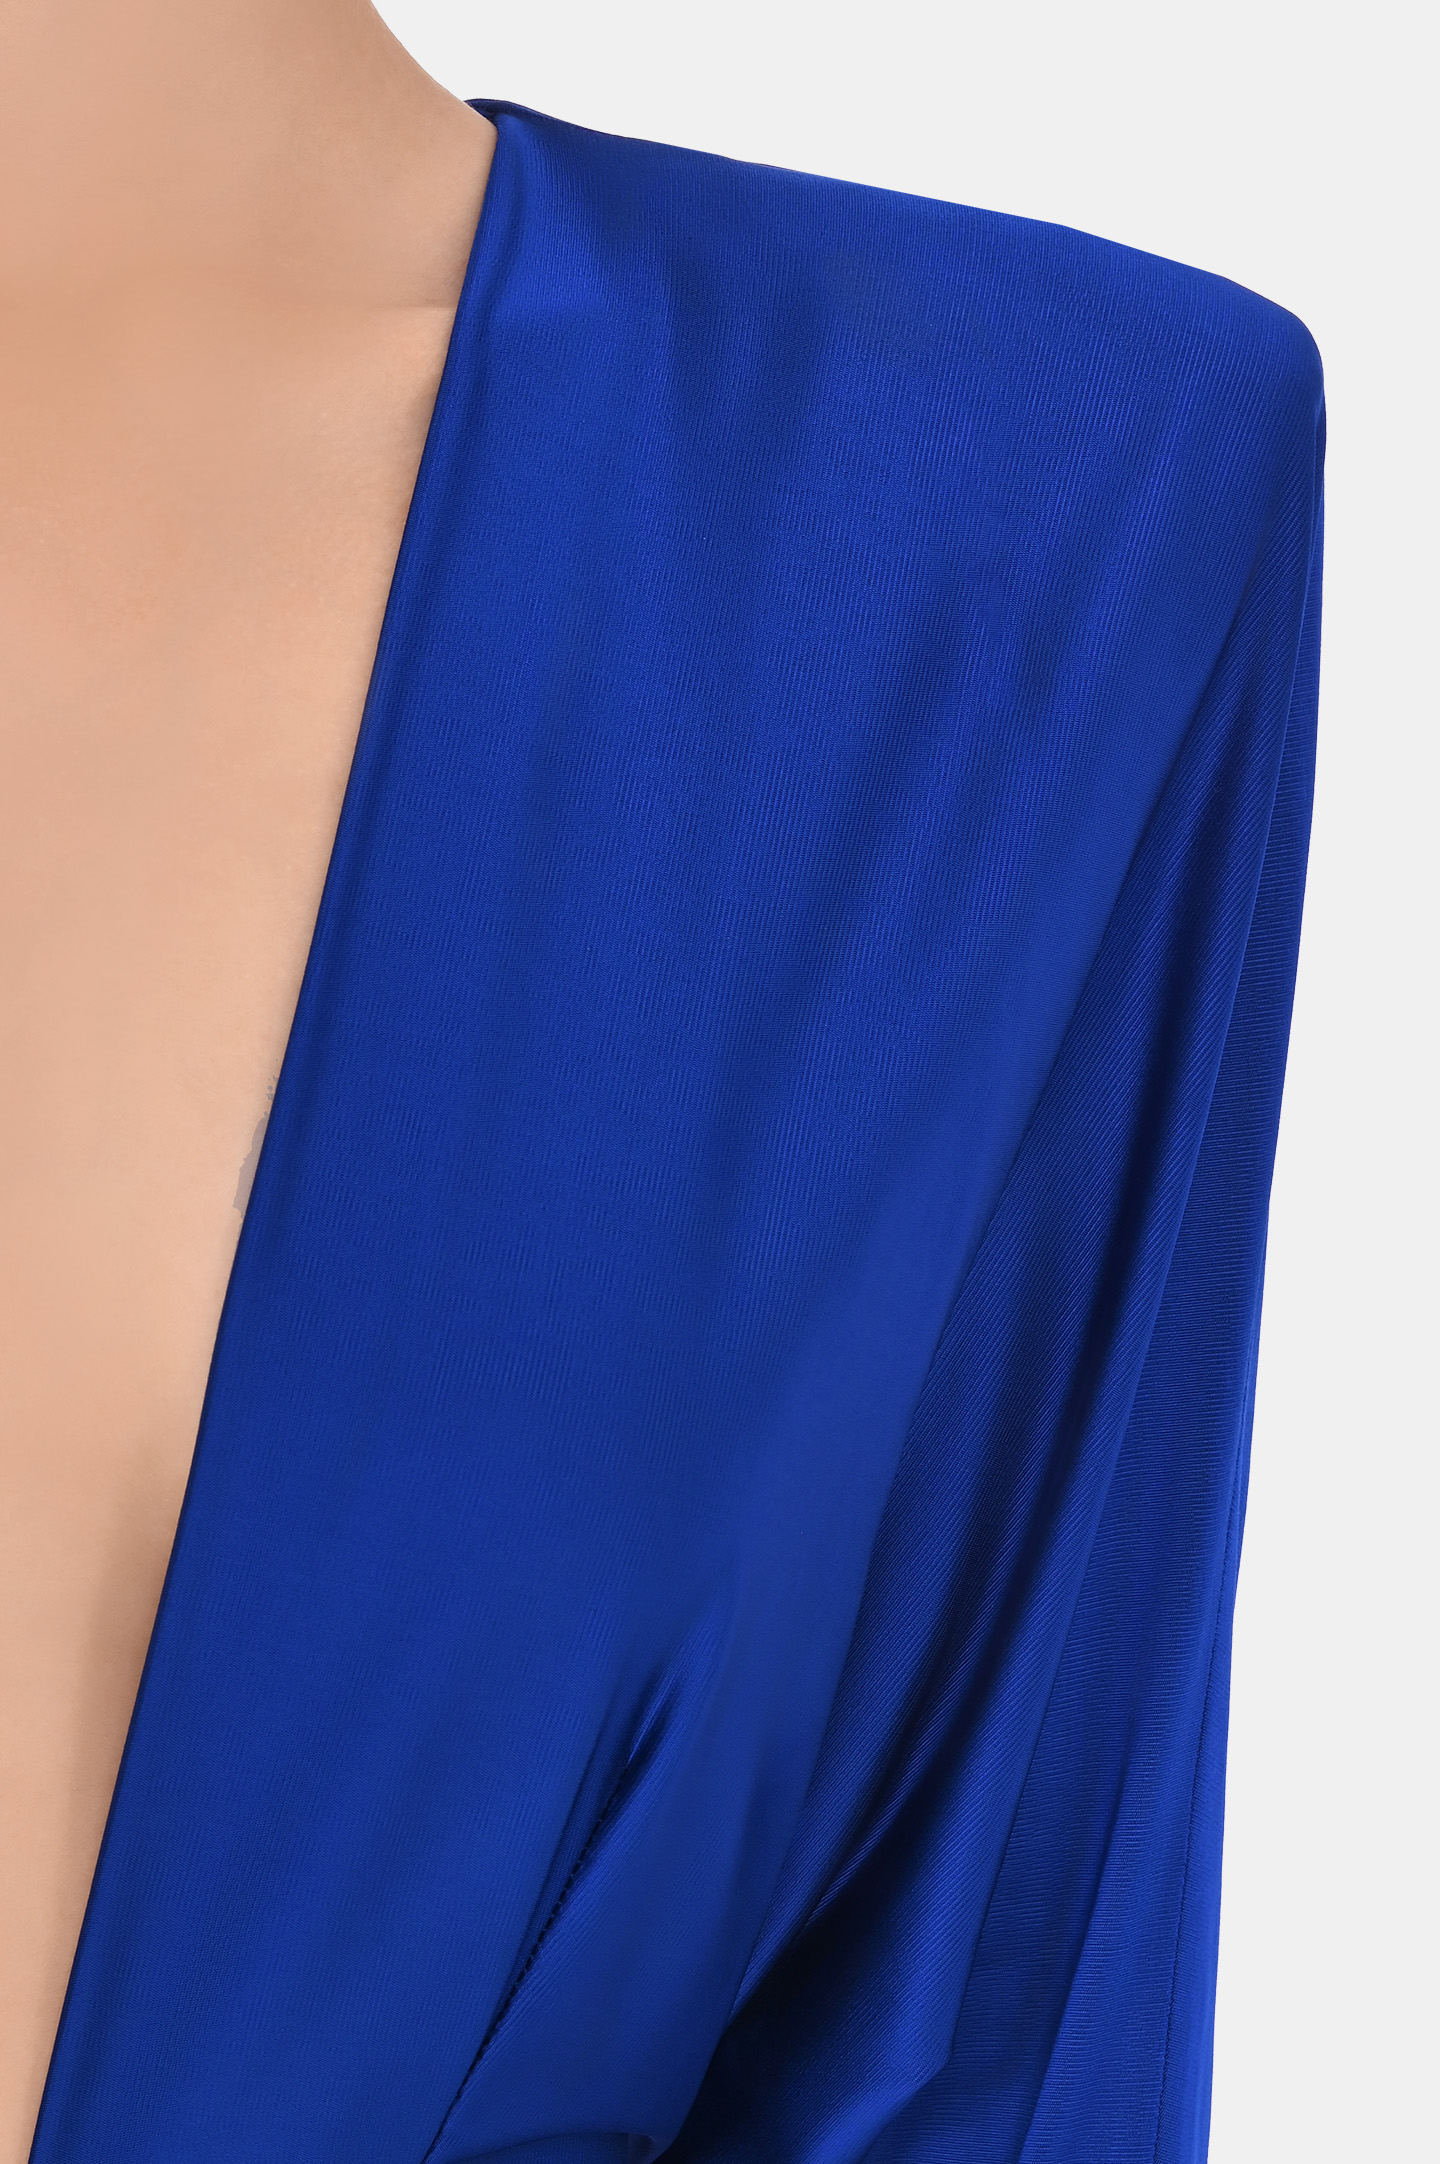 Платье ALEXANDRE VAUTHIER 232DR1919 1406, цвет: Синий, Женский